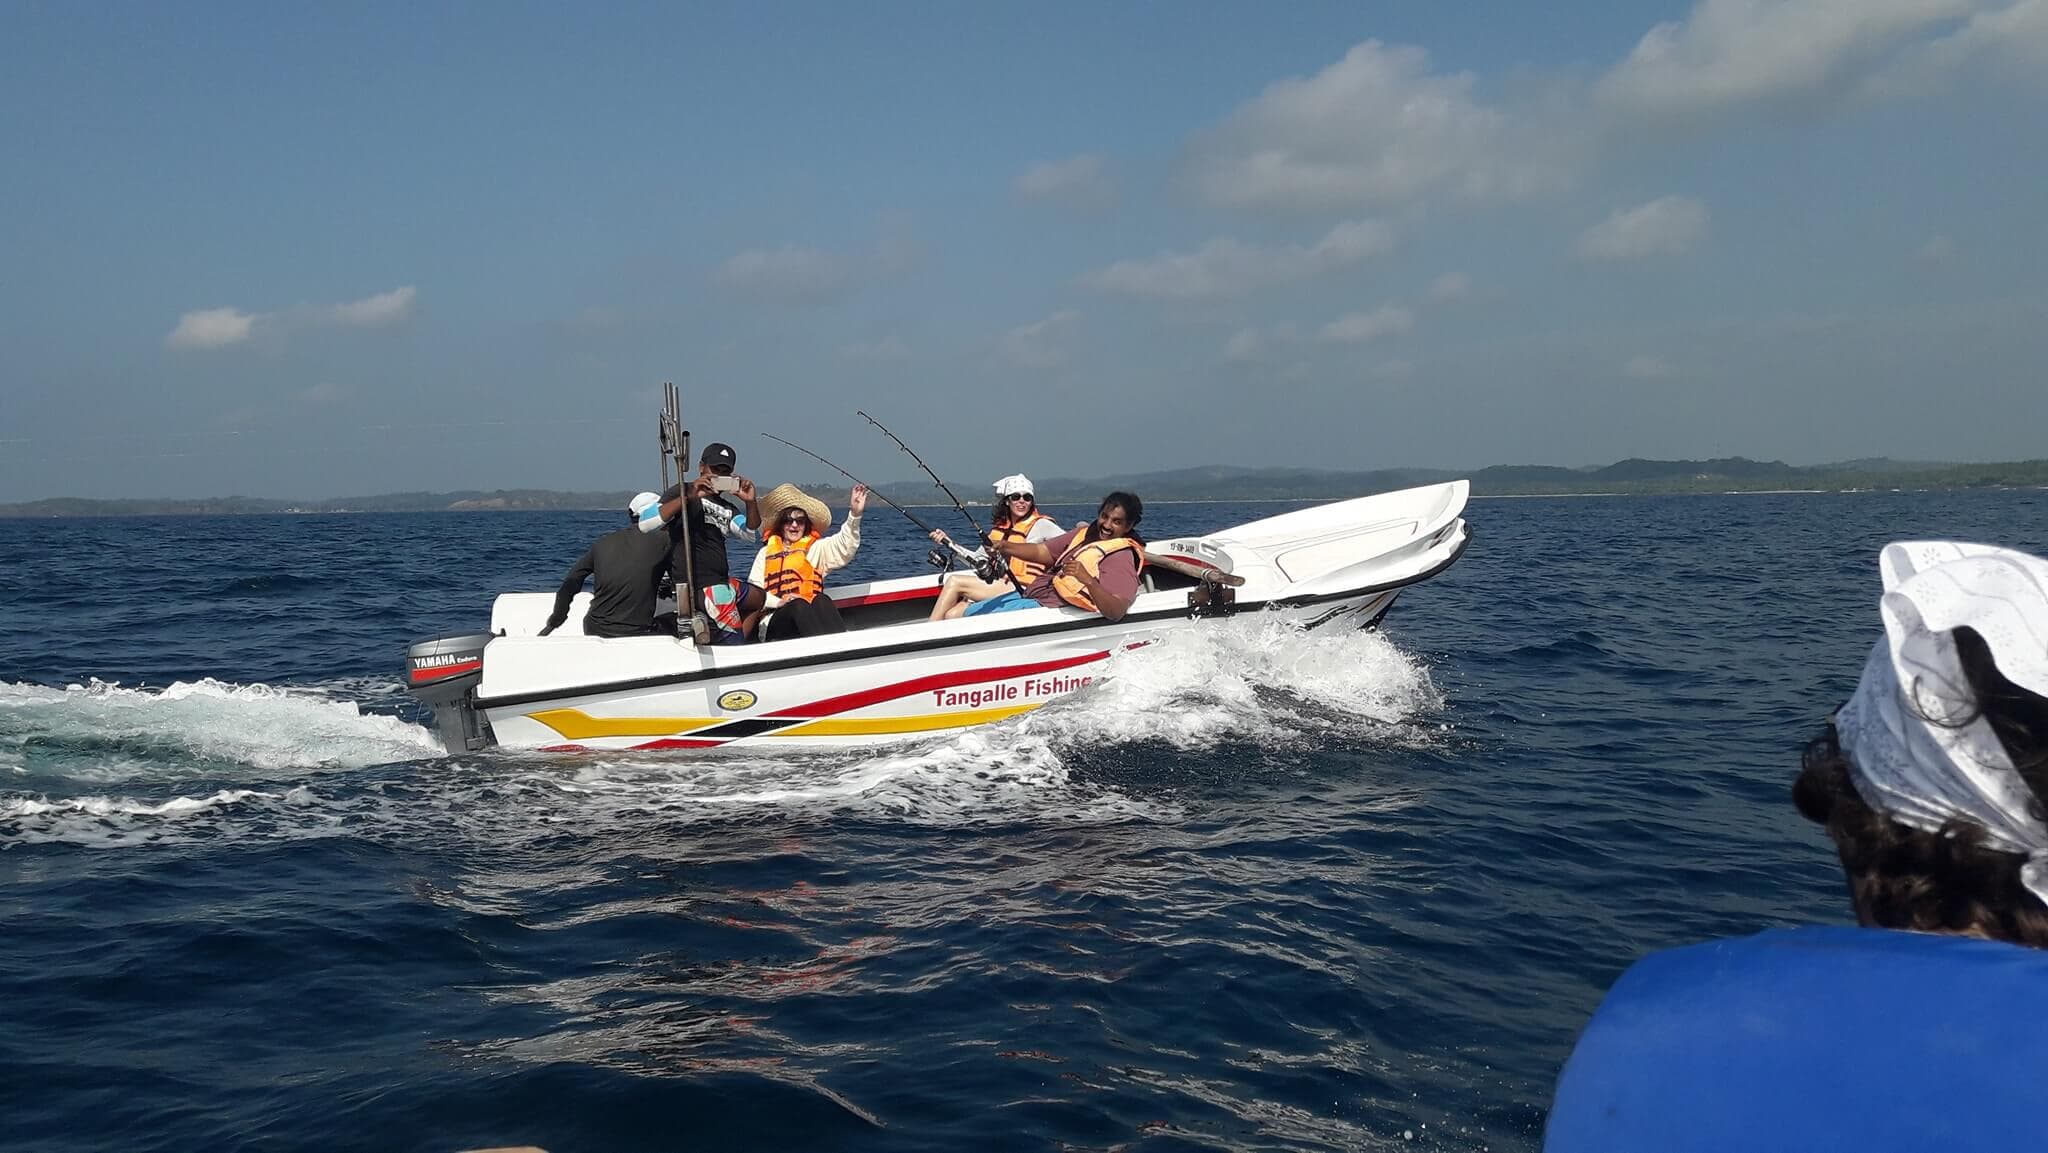 Los turistas viajan con un barco de pesca para pescar en el mar de Tangalle